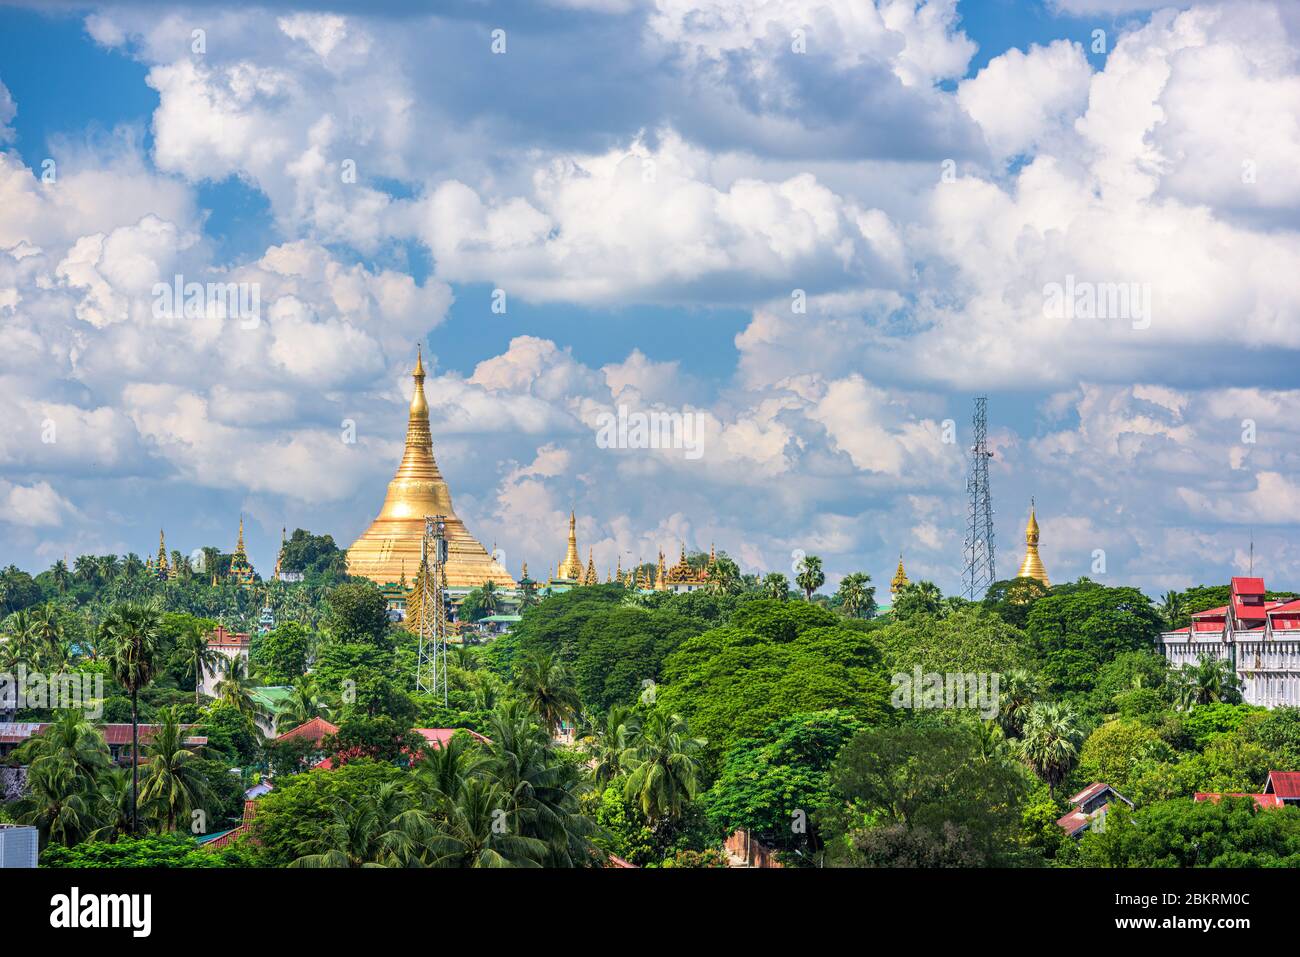 Yangon, Myanmar skyline with Shwedagon Pagoda in the afternoon. Stock Photo